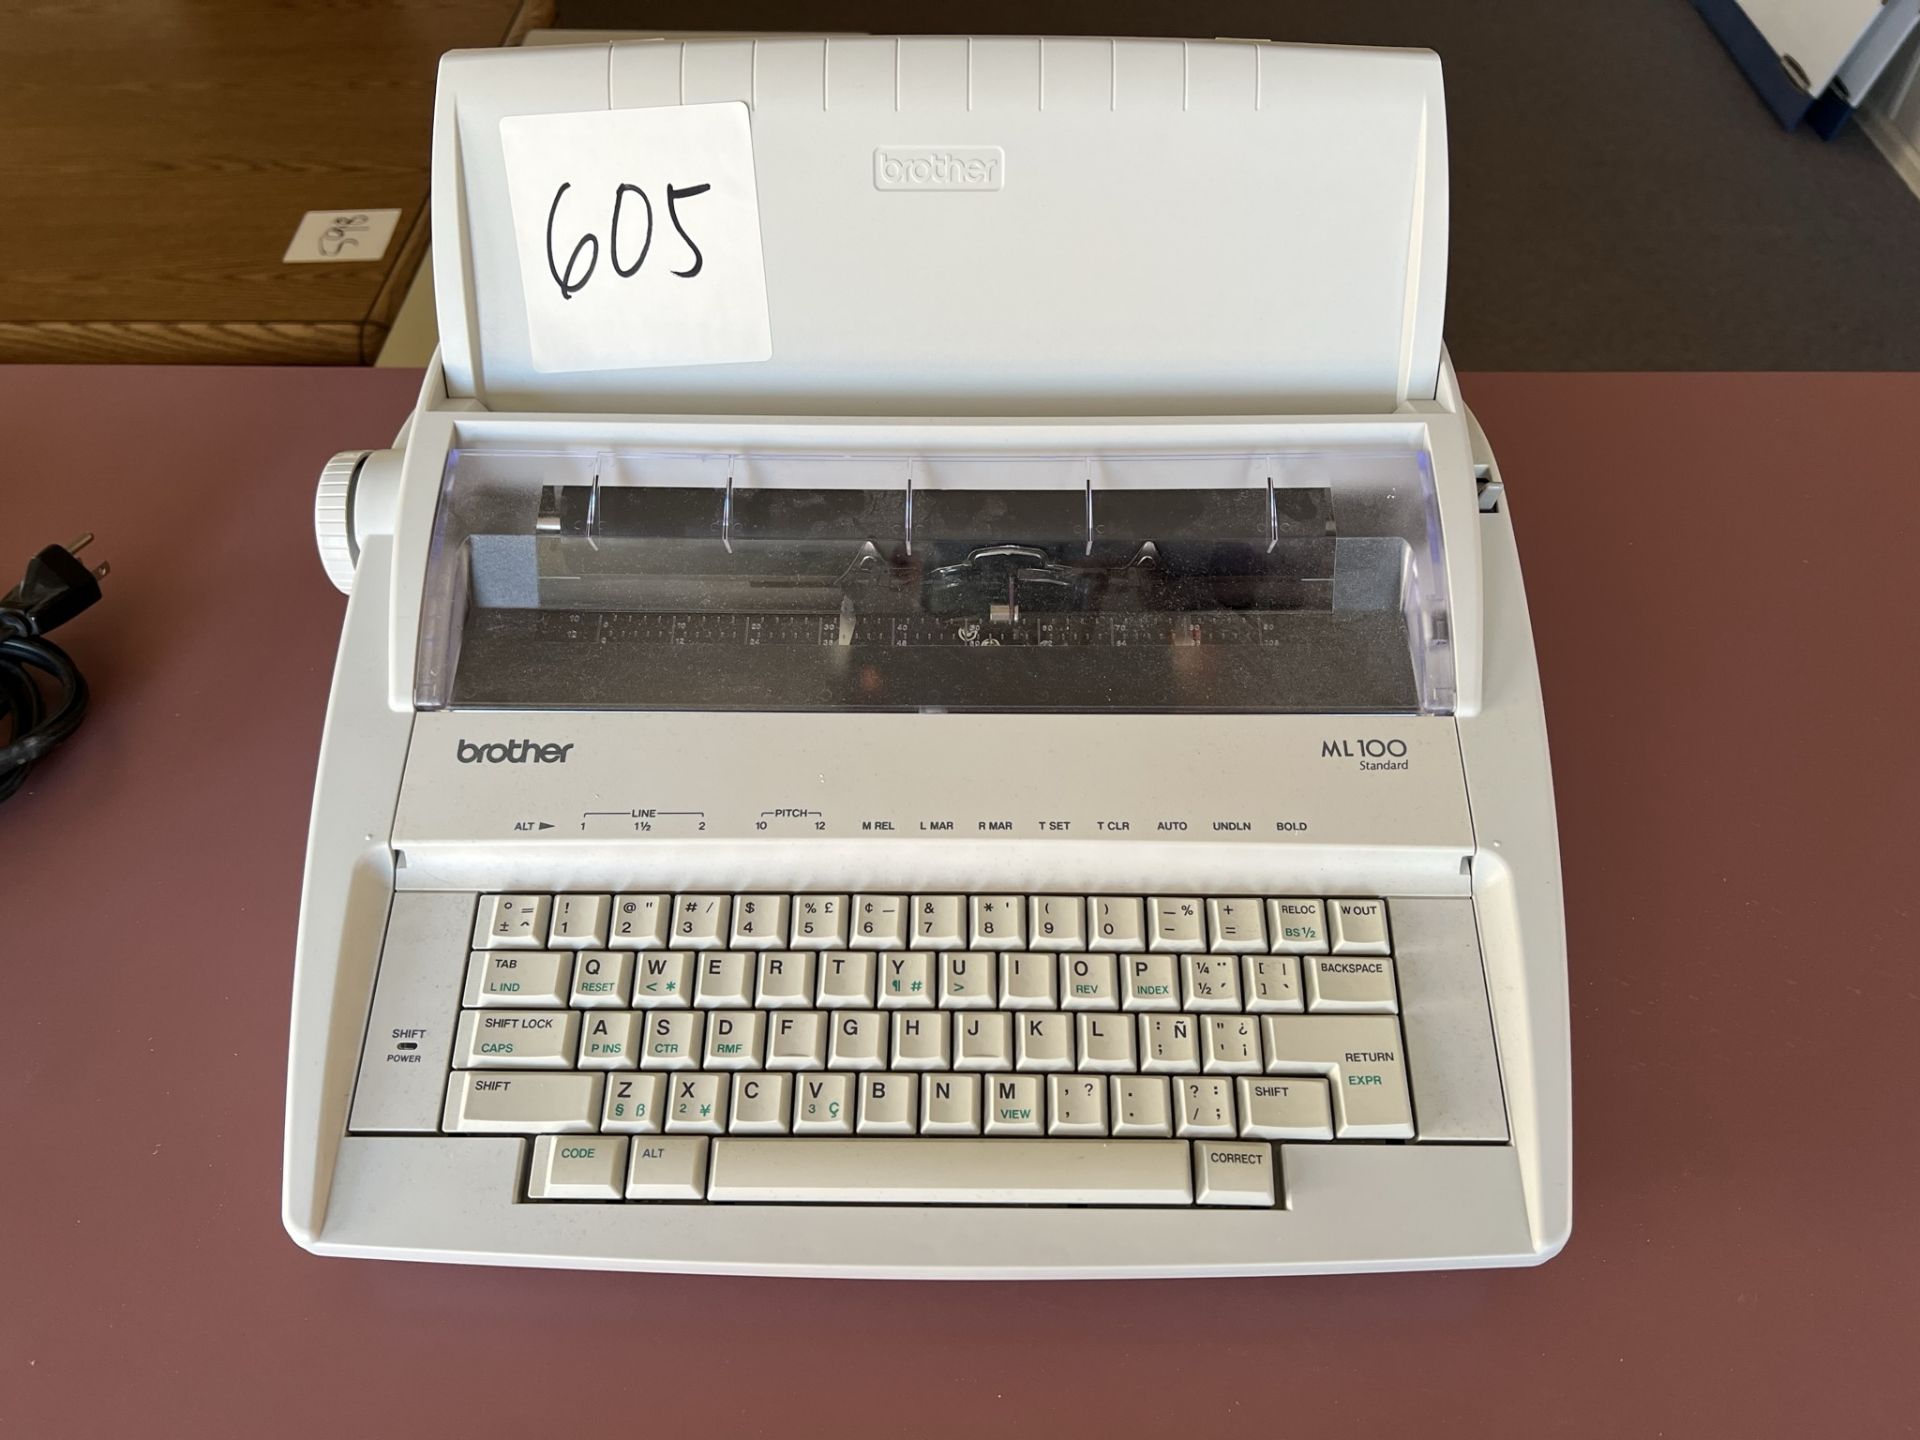 Electronic Typewriter